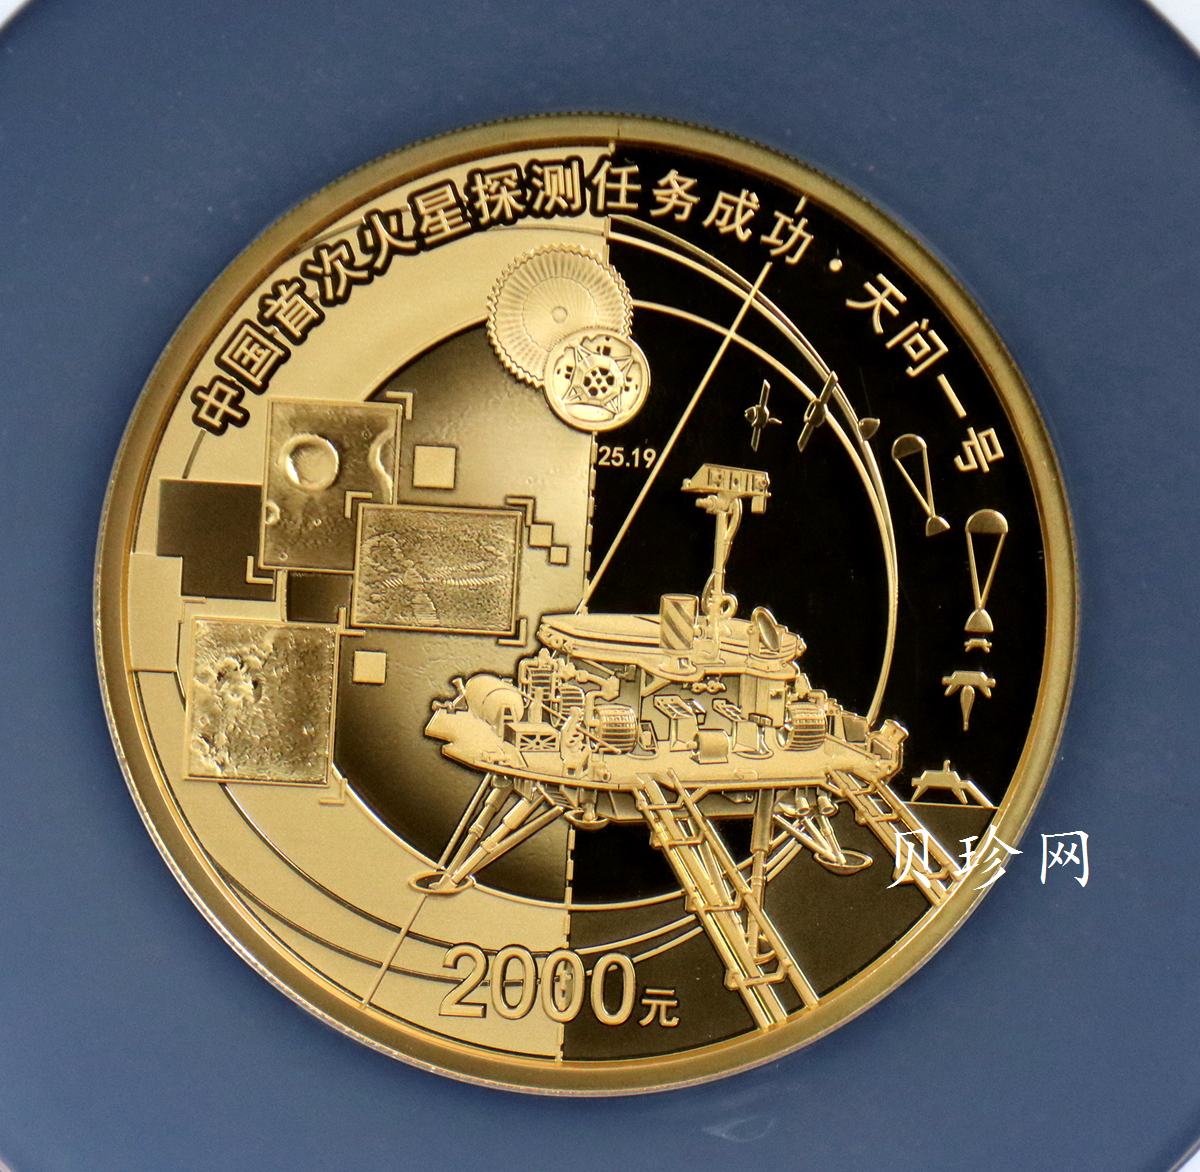 【210901】2021年中国首次火星探测任务成功150克精制金币